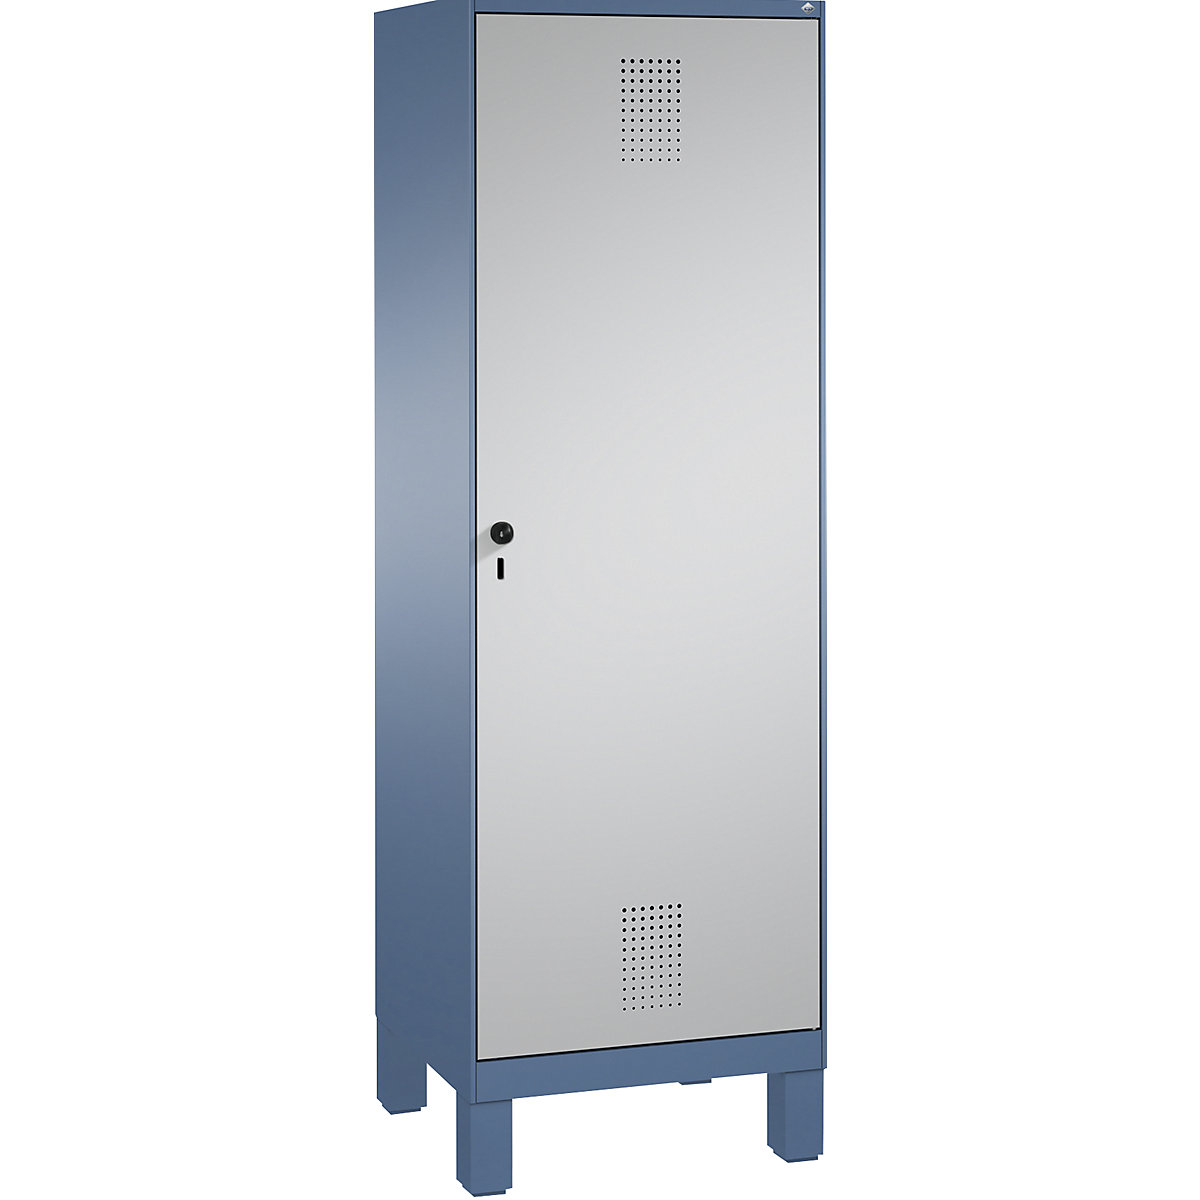 Šatní skříň s nohami EVOLO s dveřmi přes 2 oddíly – C+P, 2 oddíly, 1 dveře, šířka oddílu 300 mm, modrošedá / bílý hliník-4